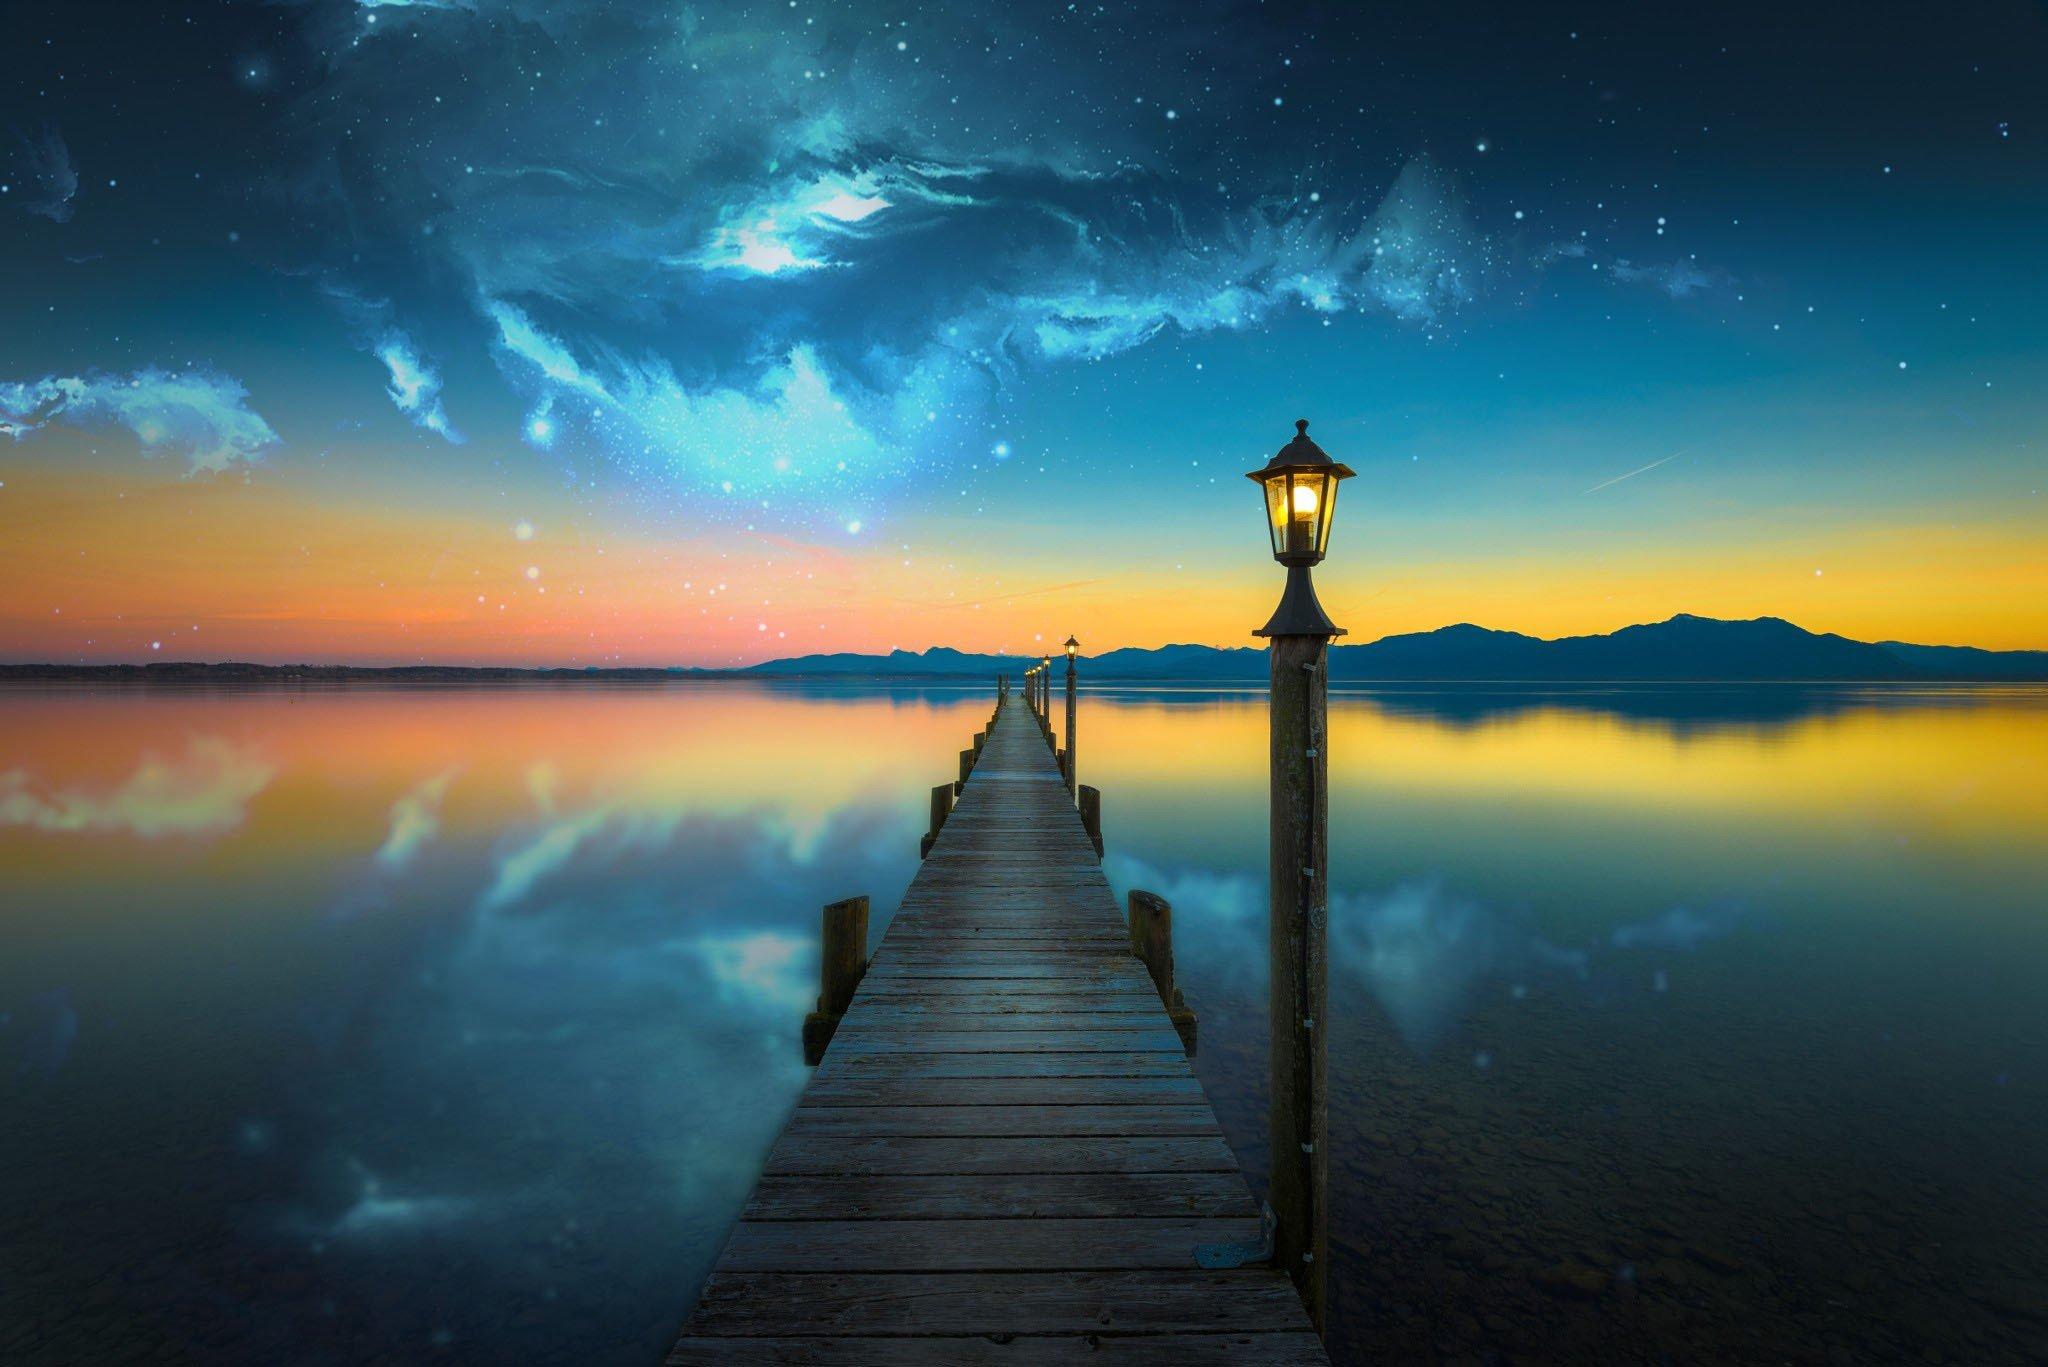 2048 x 1367 · jpeg - nebula, Space, Lake, Evening, Photo manipulation, Bridge, Water HD ...